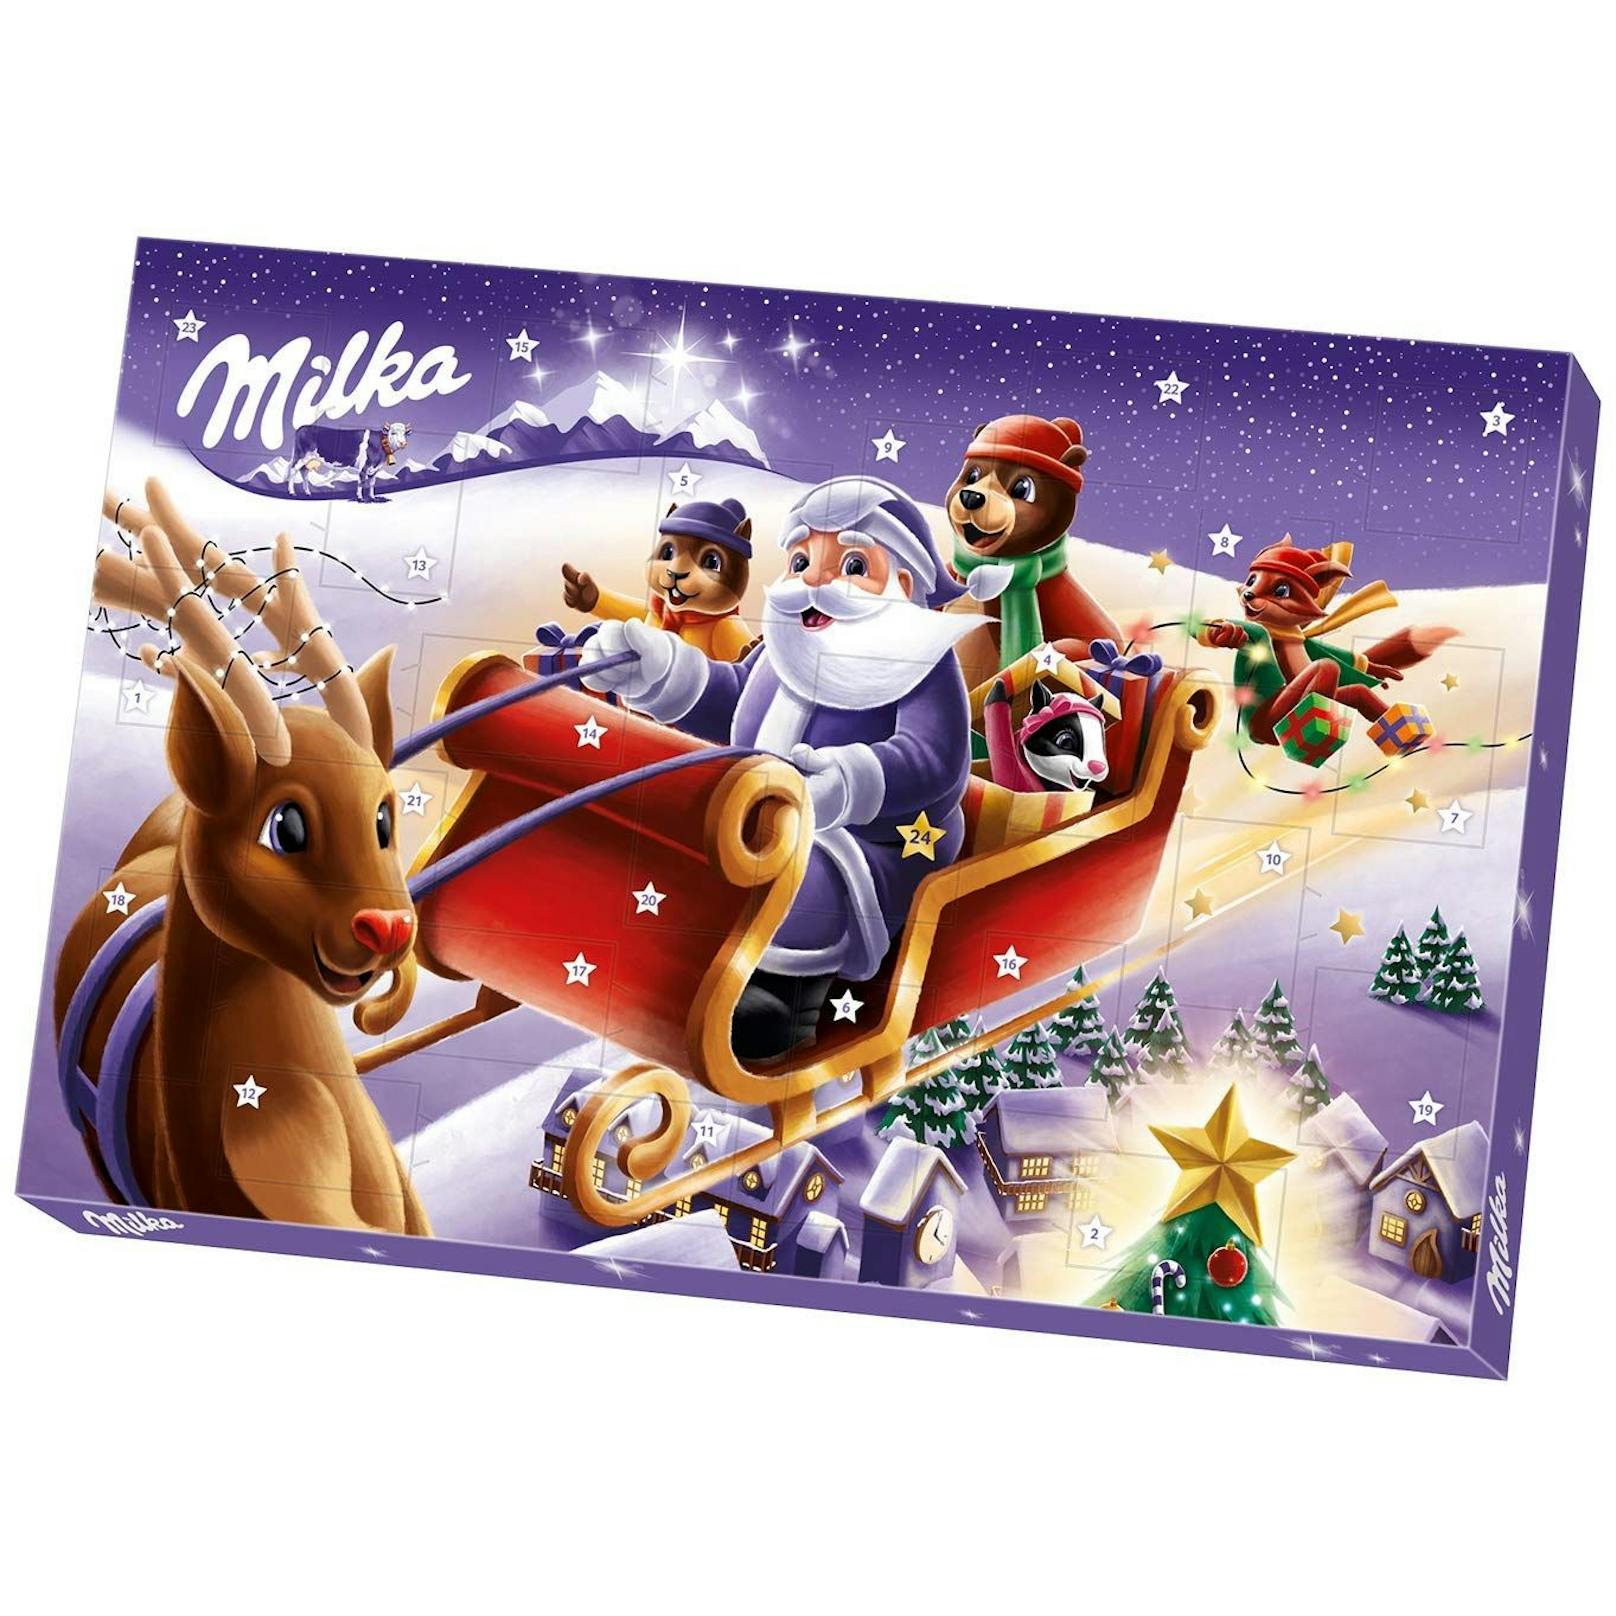 Der <strong>Milka Adventkalender</strong> überrascht in diesem Jahr mit&nbsp;Schokoladenfiguren mit Milchcrèmefüllung. Um 6,99 Euro.